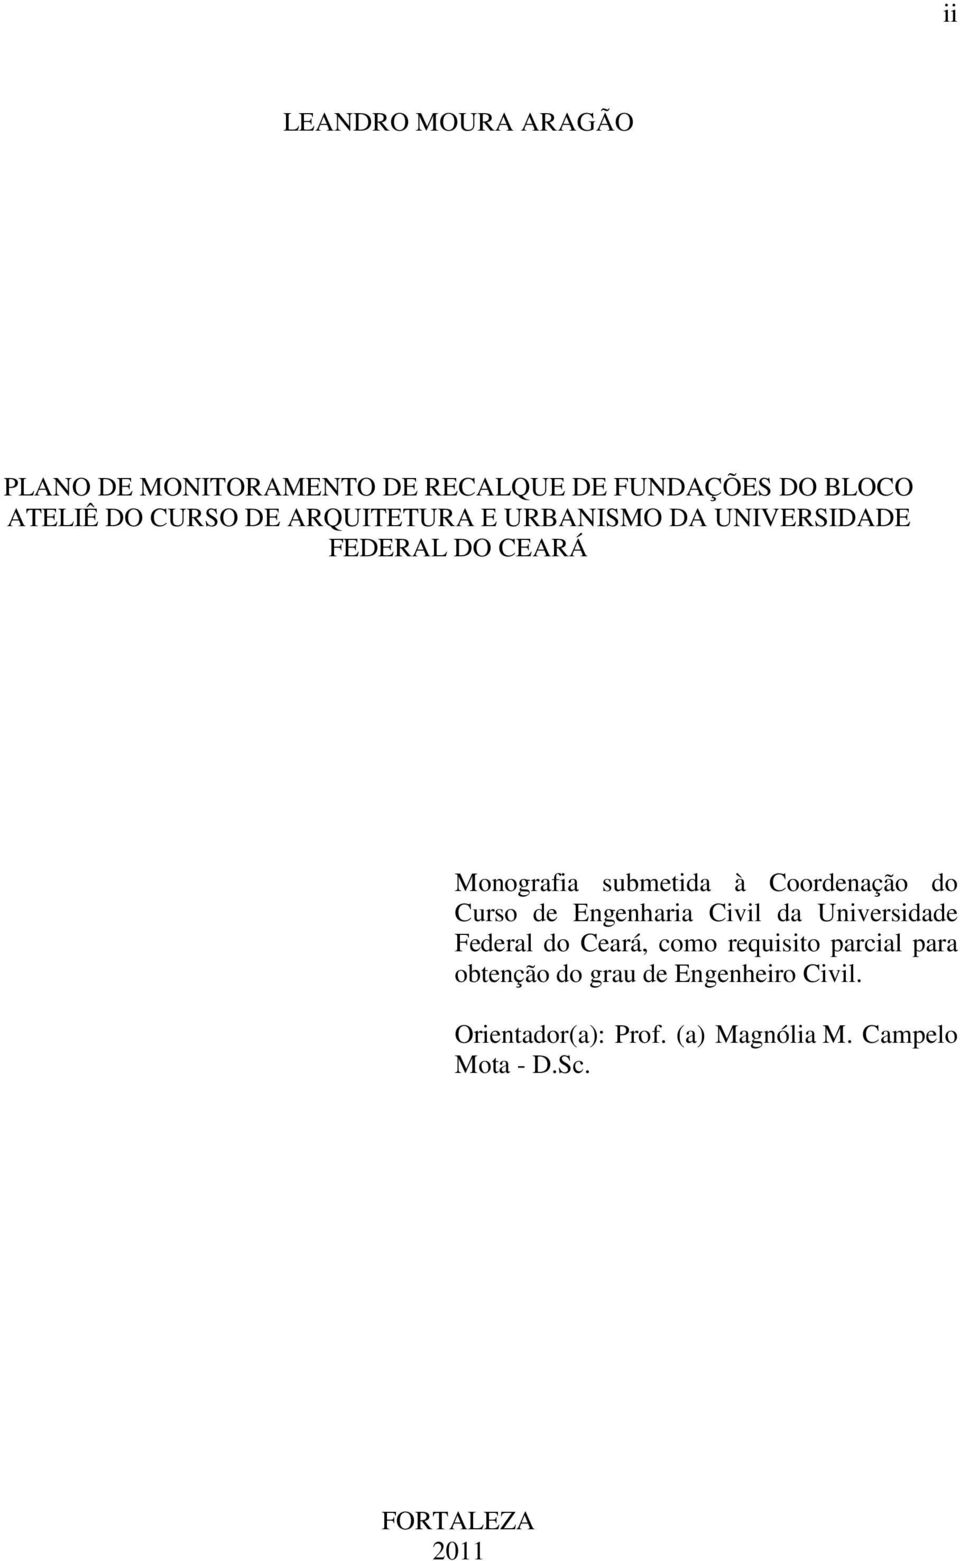 Curso de Engenharia Civil da Universidade Federal do Ceará, como requisito parcial para obtenção